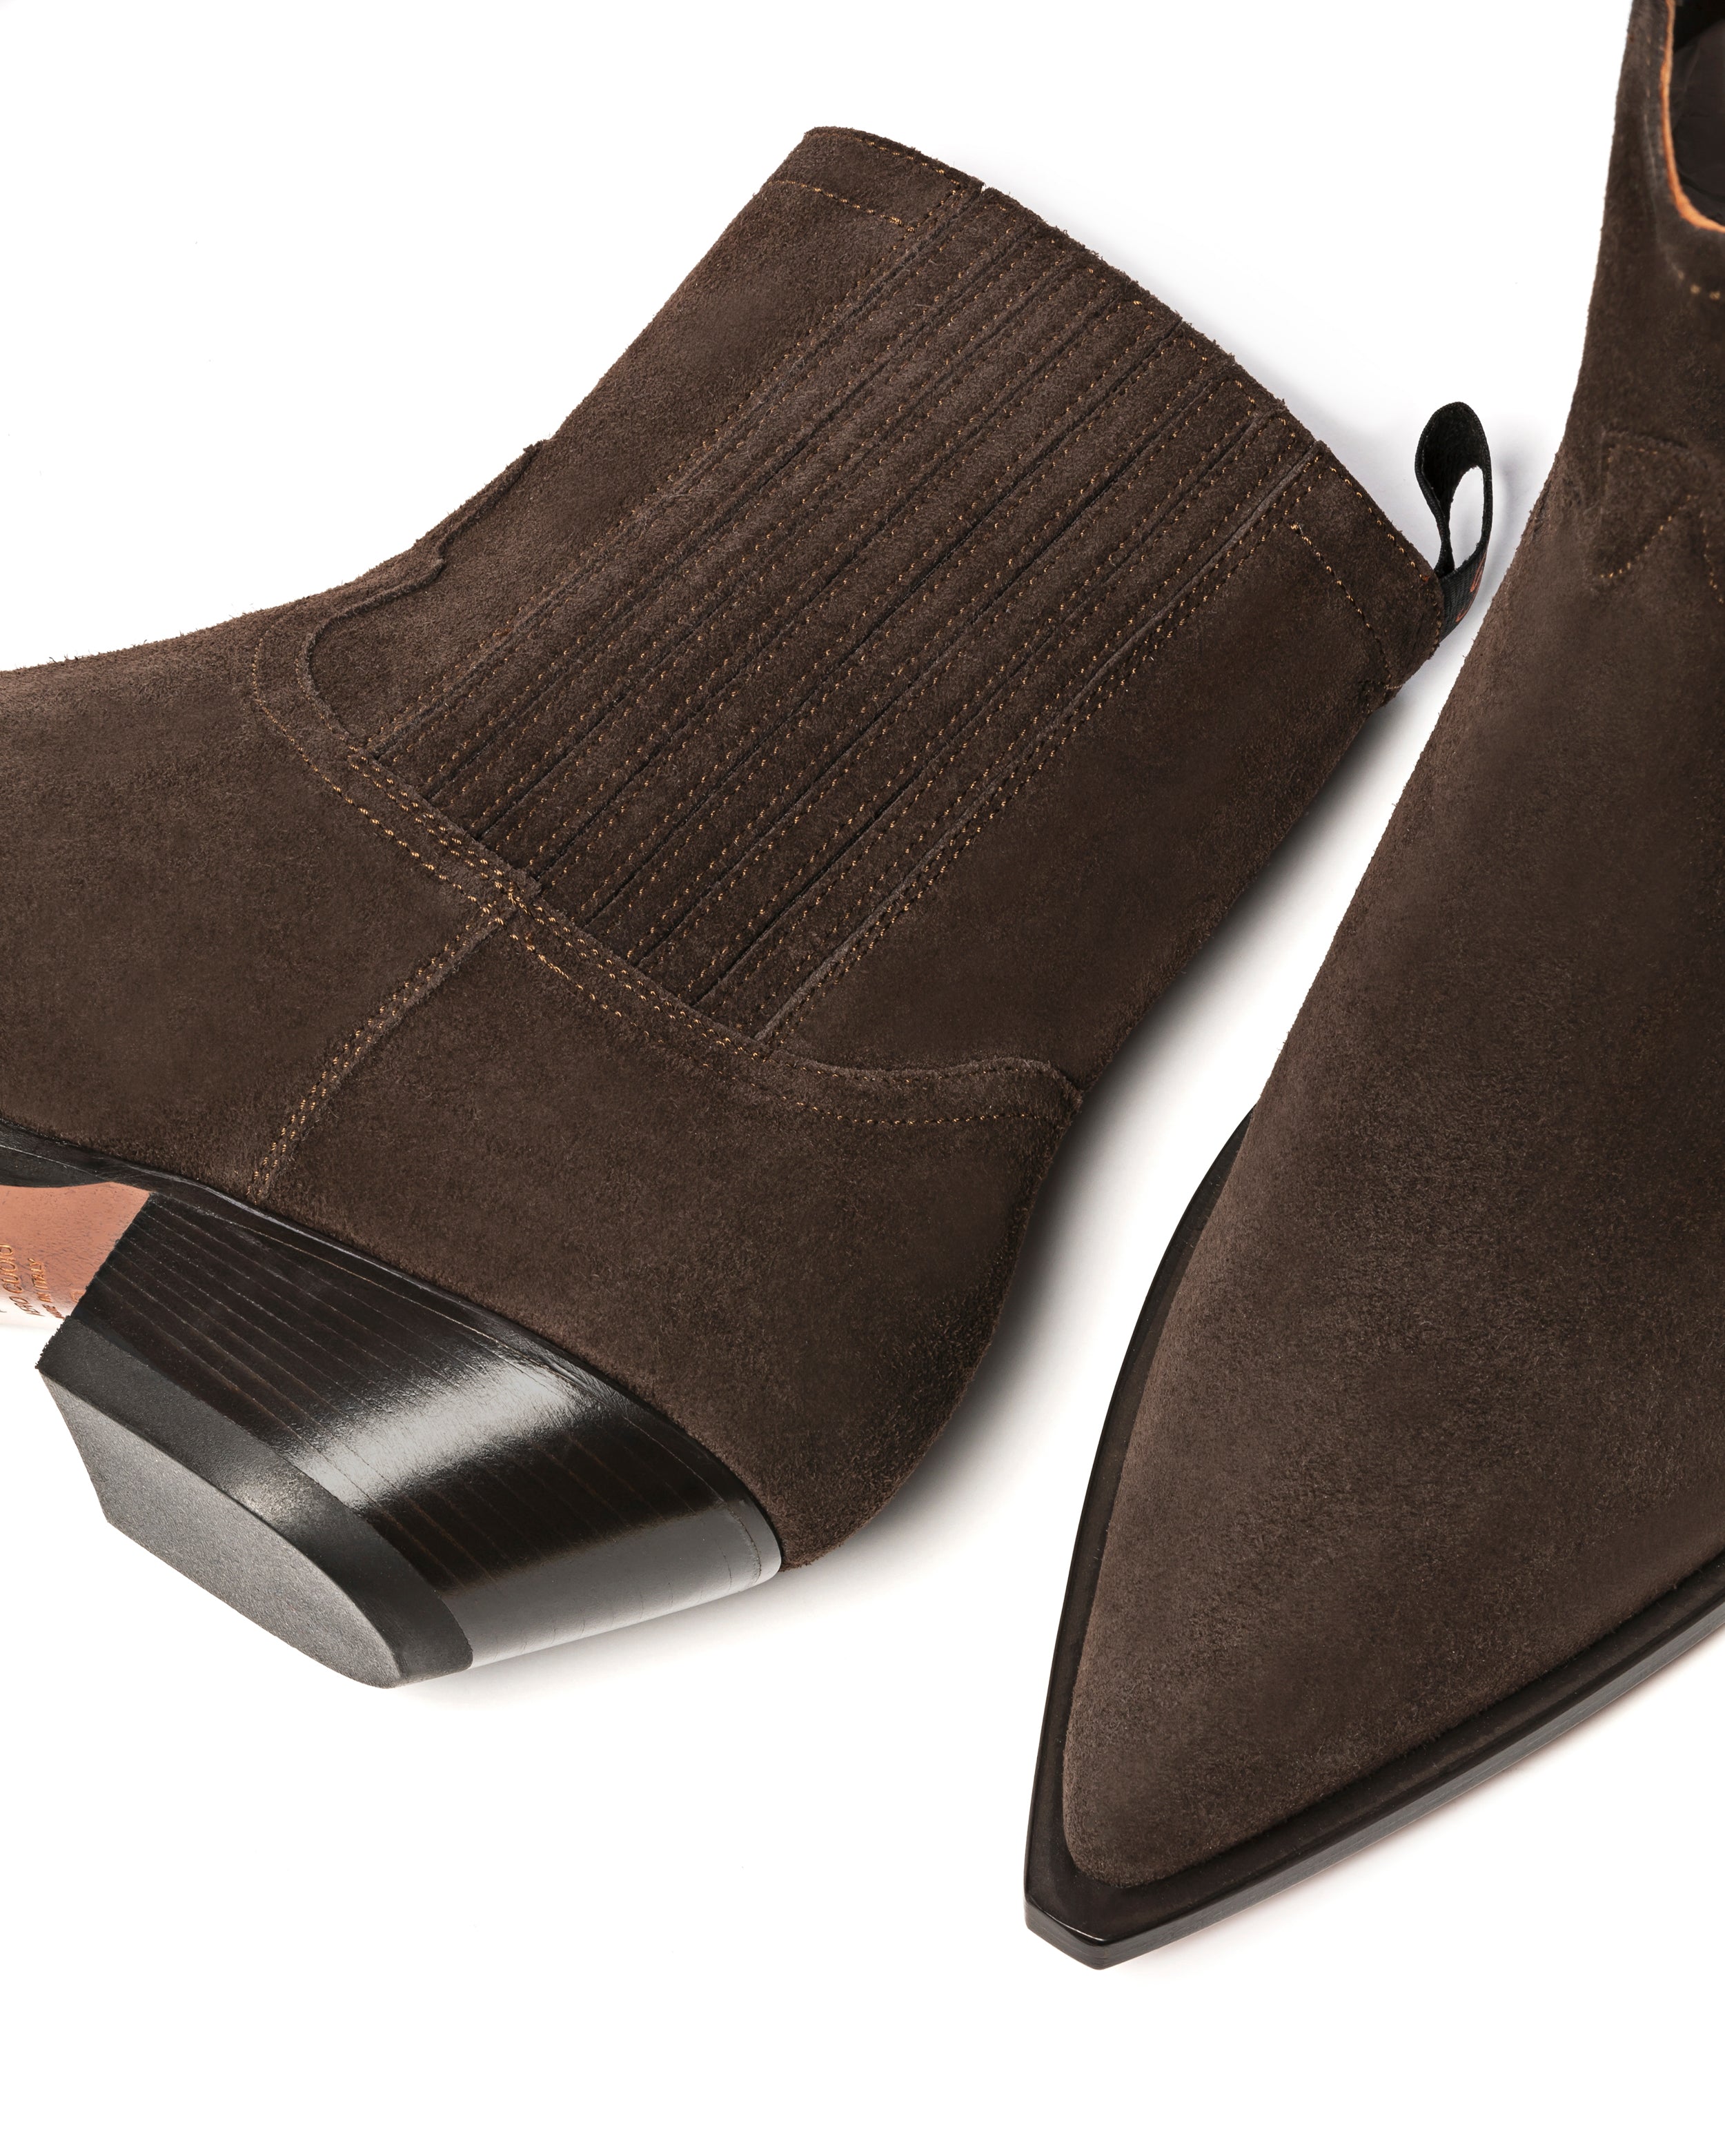 HIDALGO Men's Ankle Boots in Brown Suede